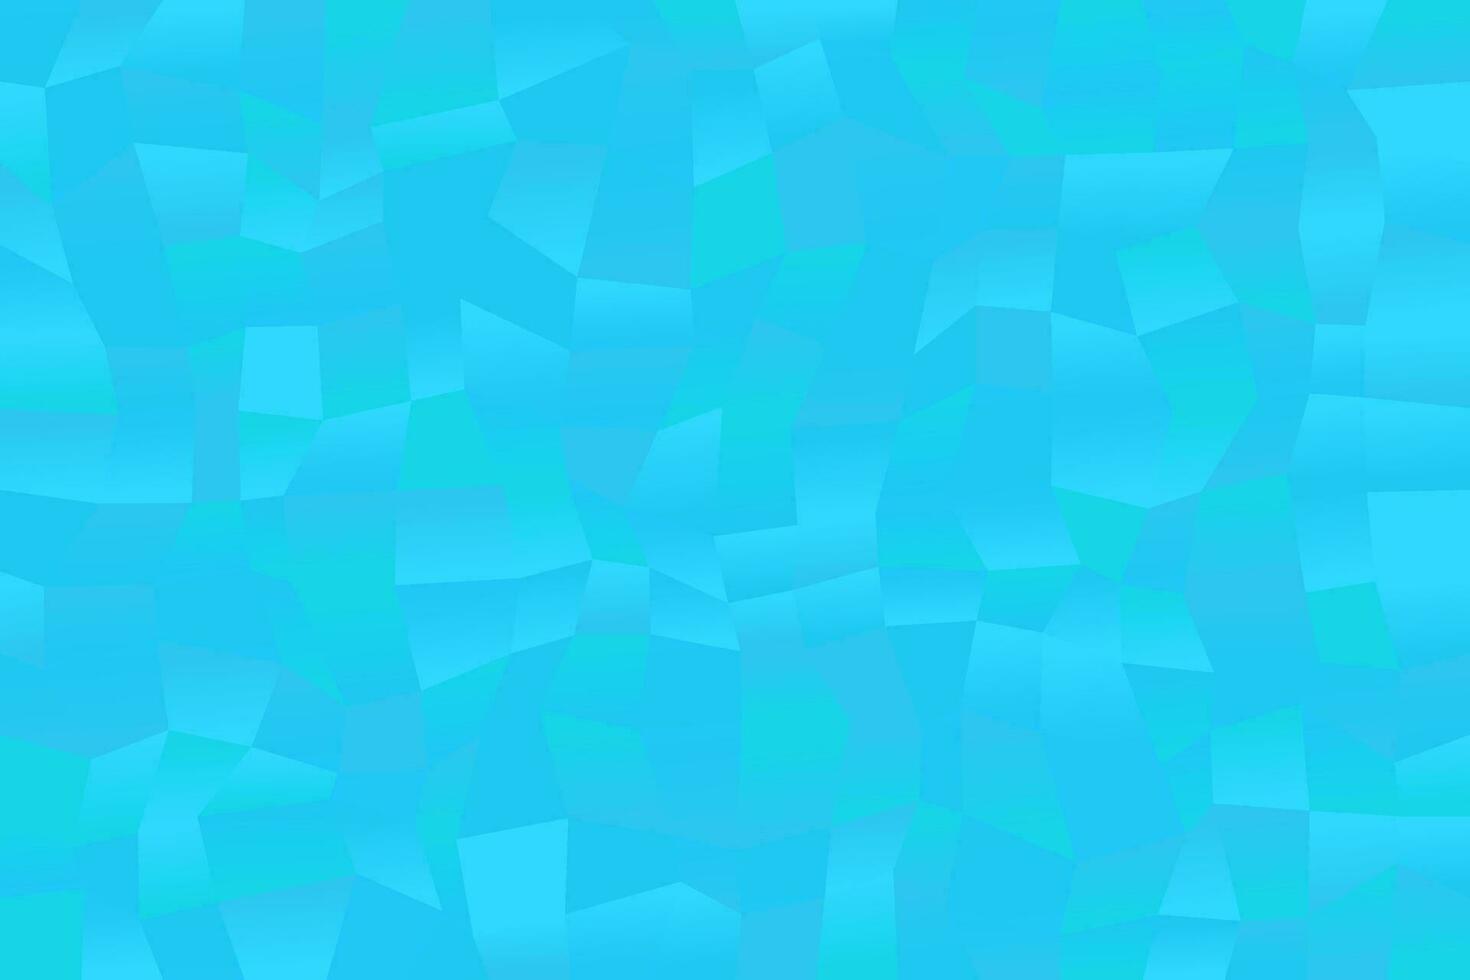 ljus blå lutning slumpmässig polygon webb sida bakgrund - abstrakt geometrisk kaotisk vektor grafisk från rektangel